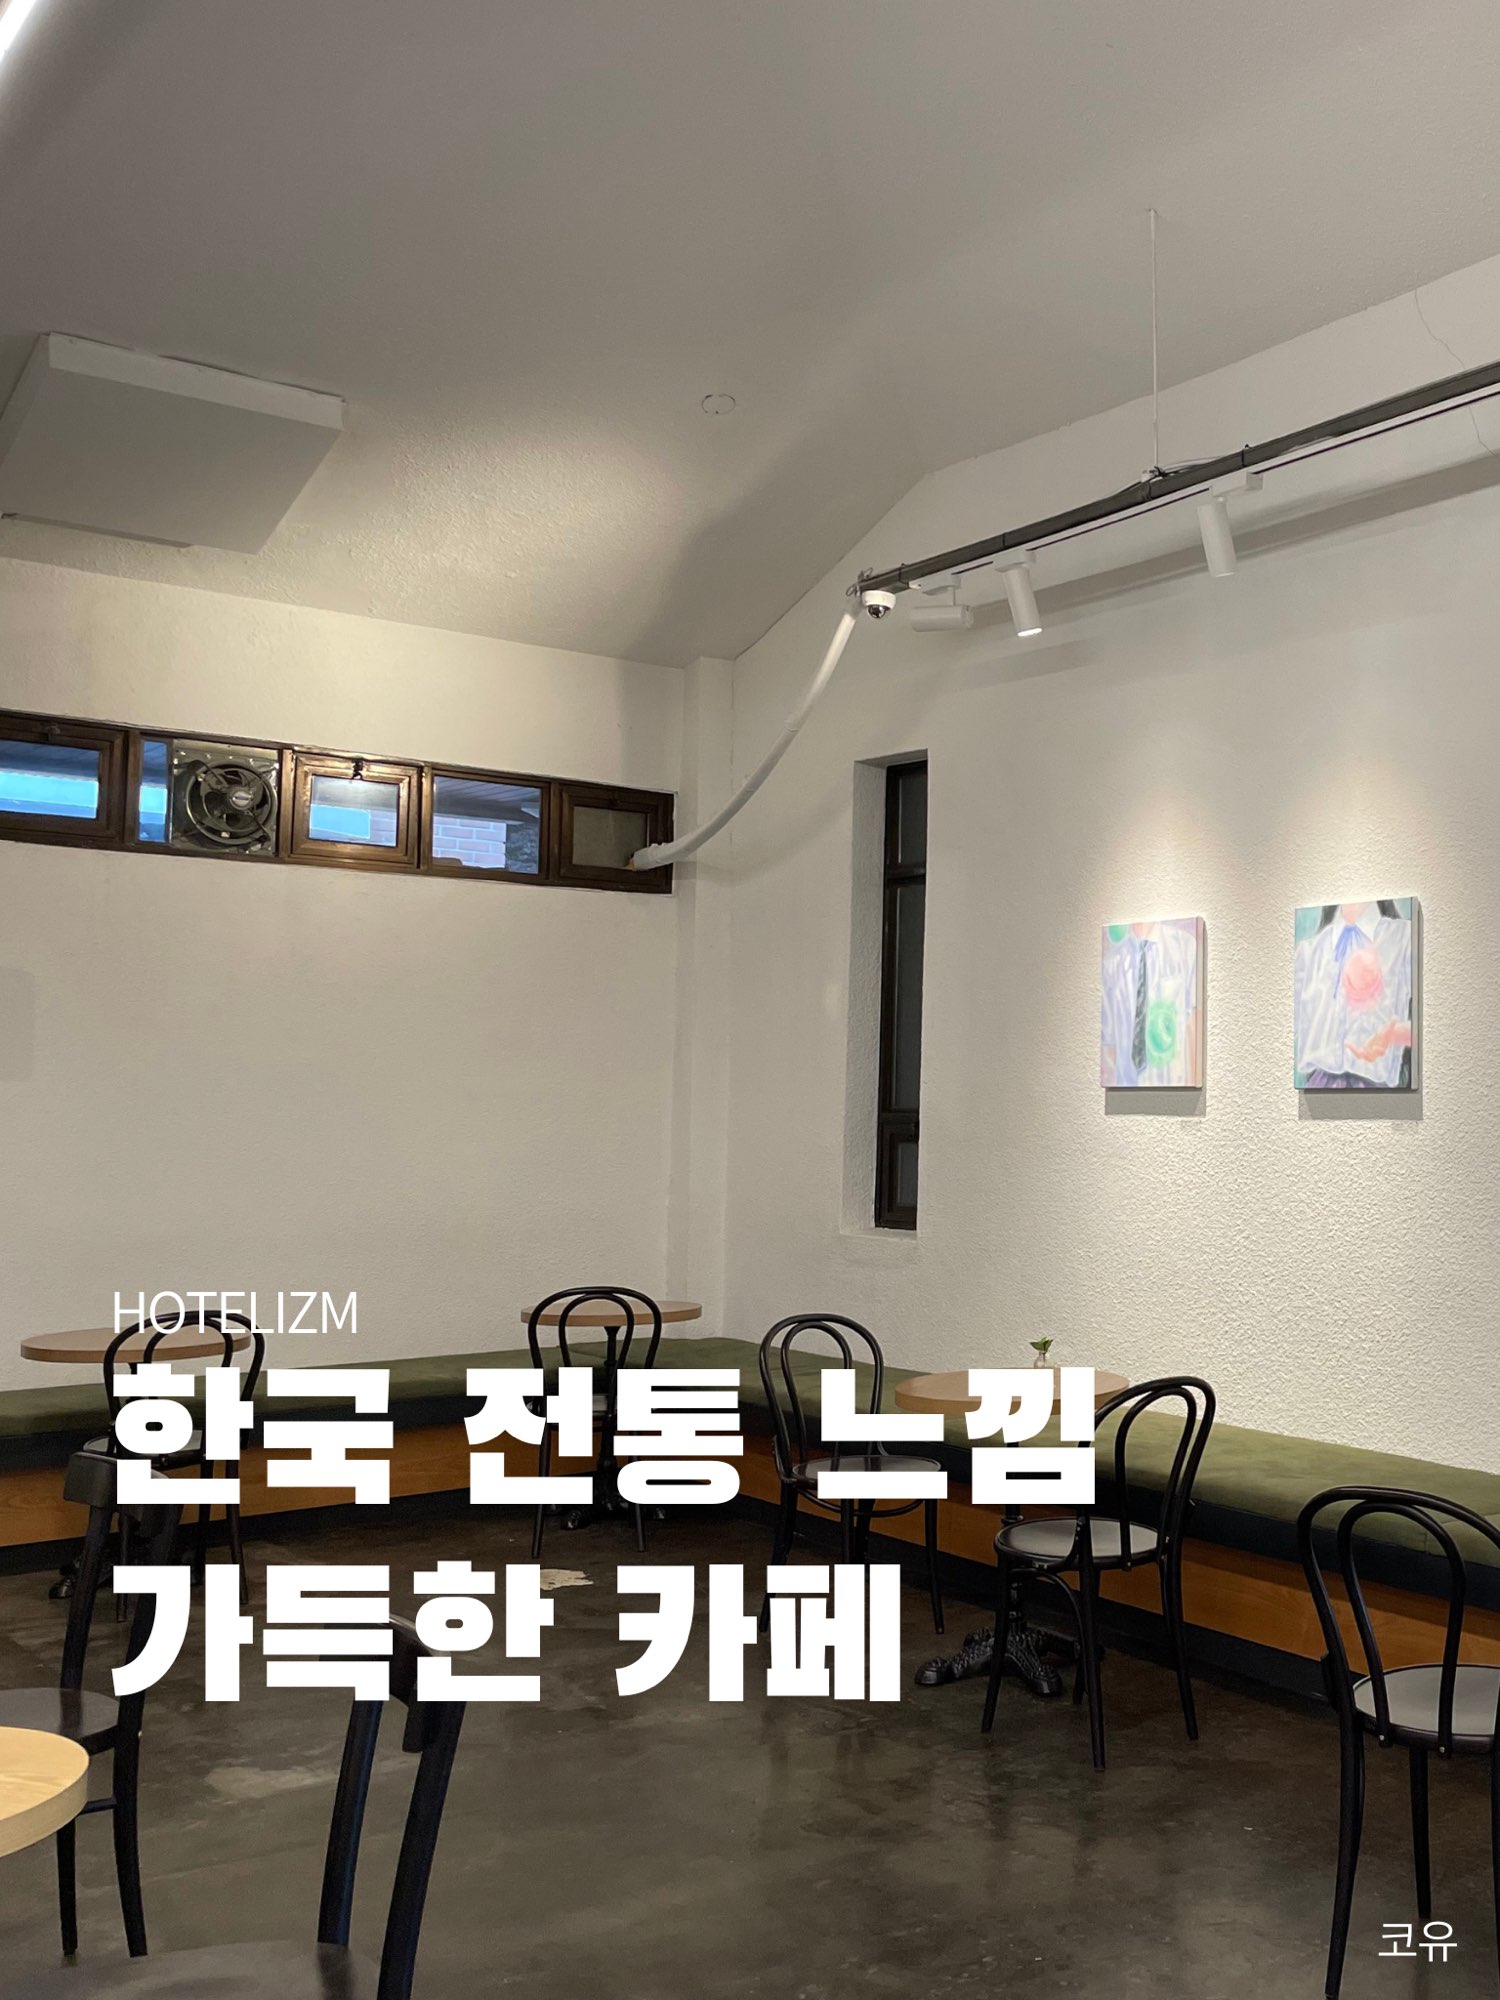 充满韩国传统感觉的咖啡馆☕️